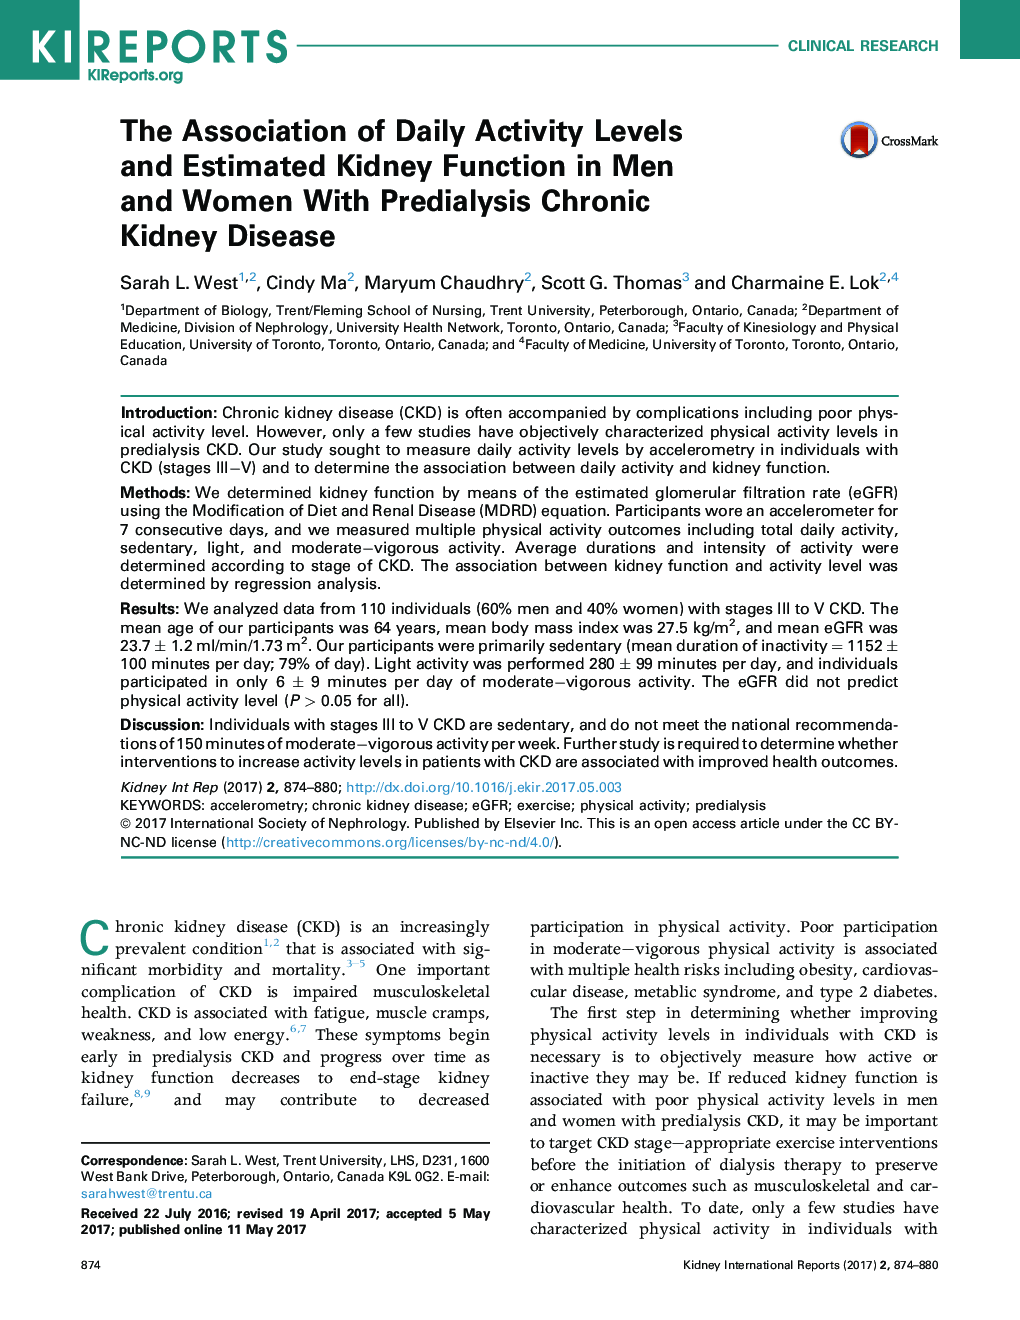 انجمن فعالیت های روزانه و عملکرد کلیه در مردان و زنان مبتلا به مزمن کلیوی مزمن 